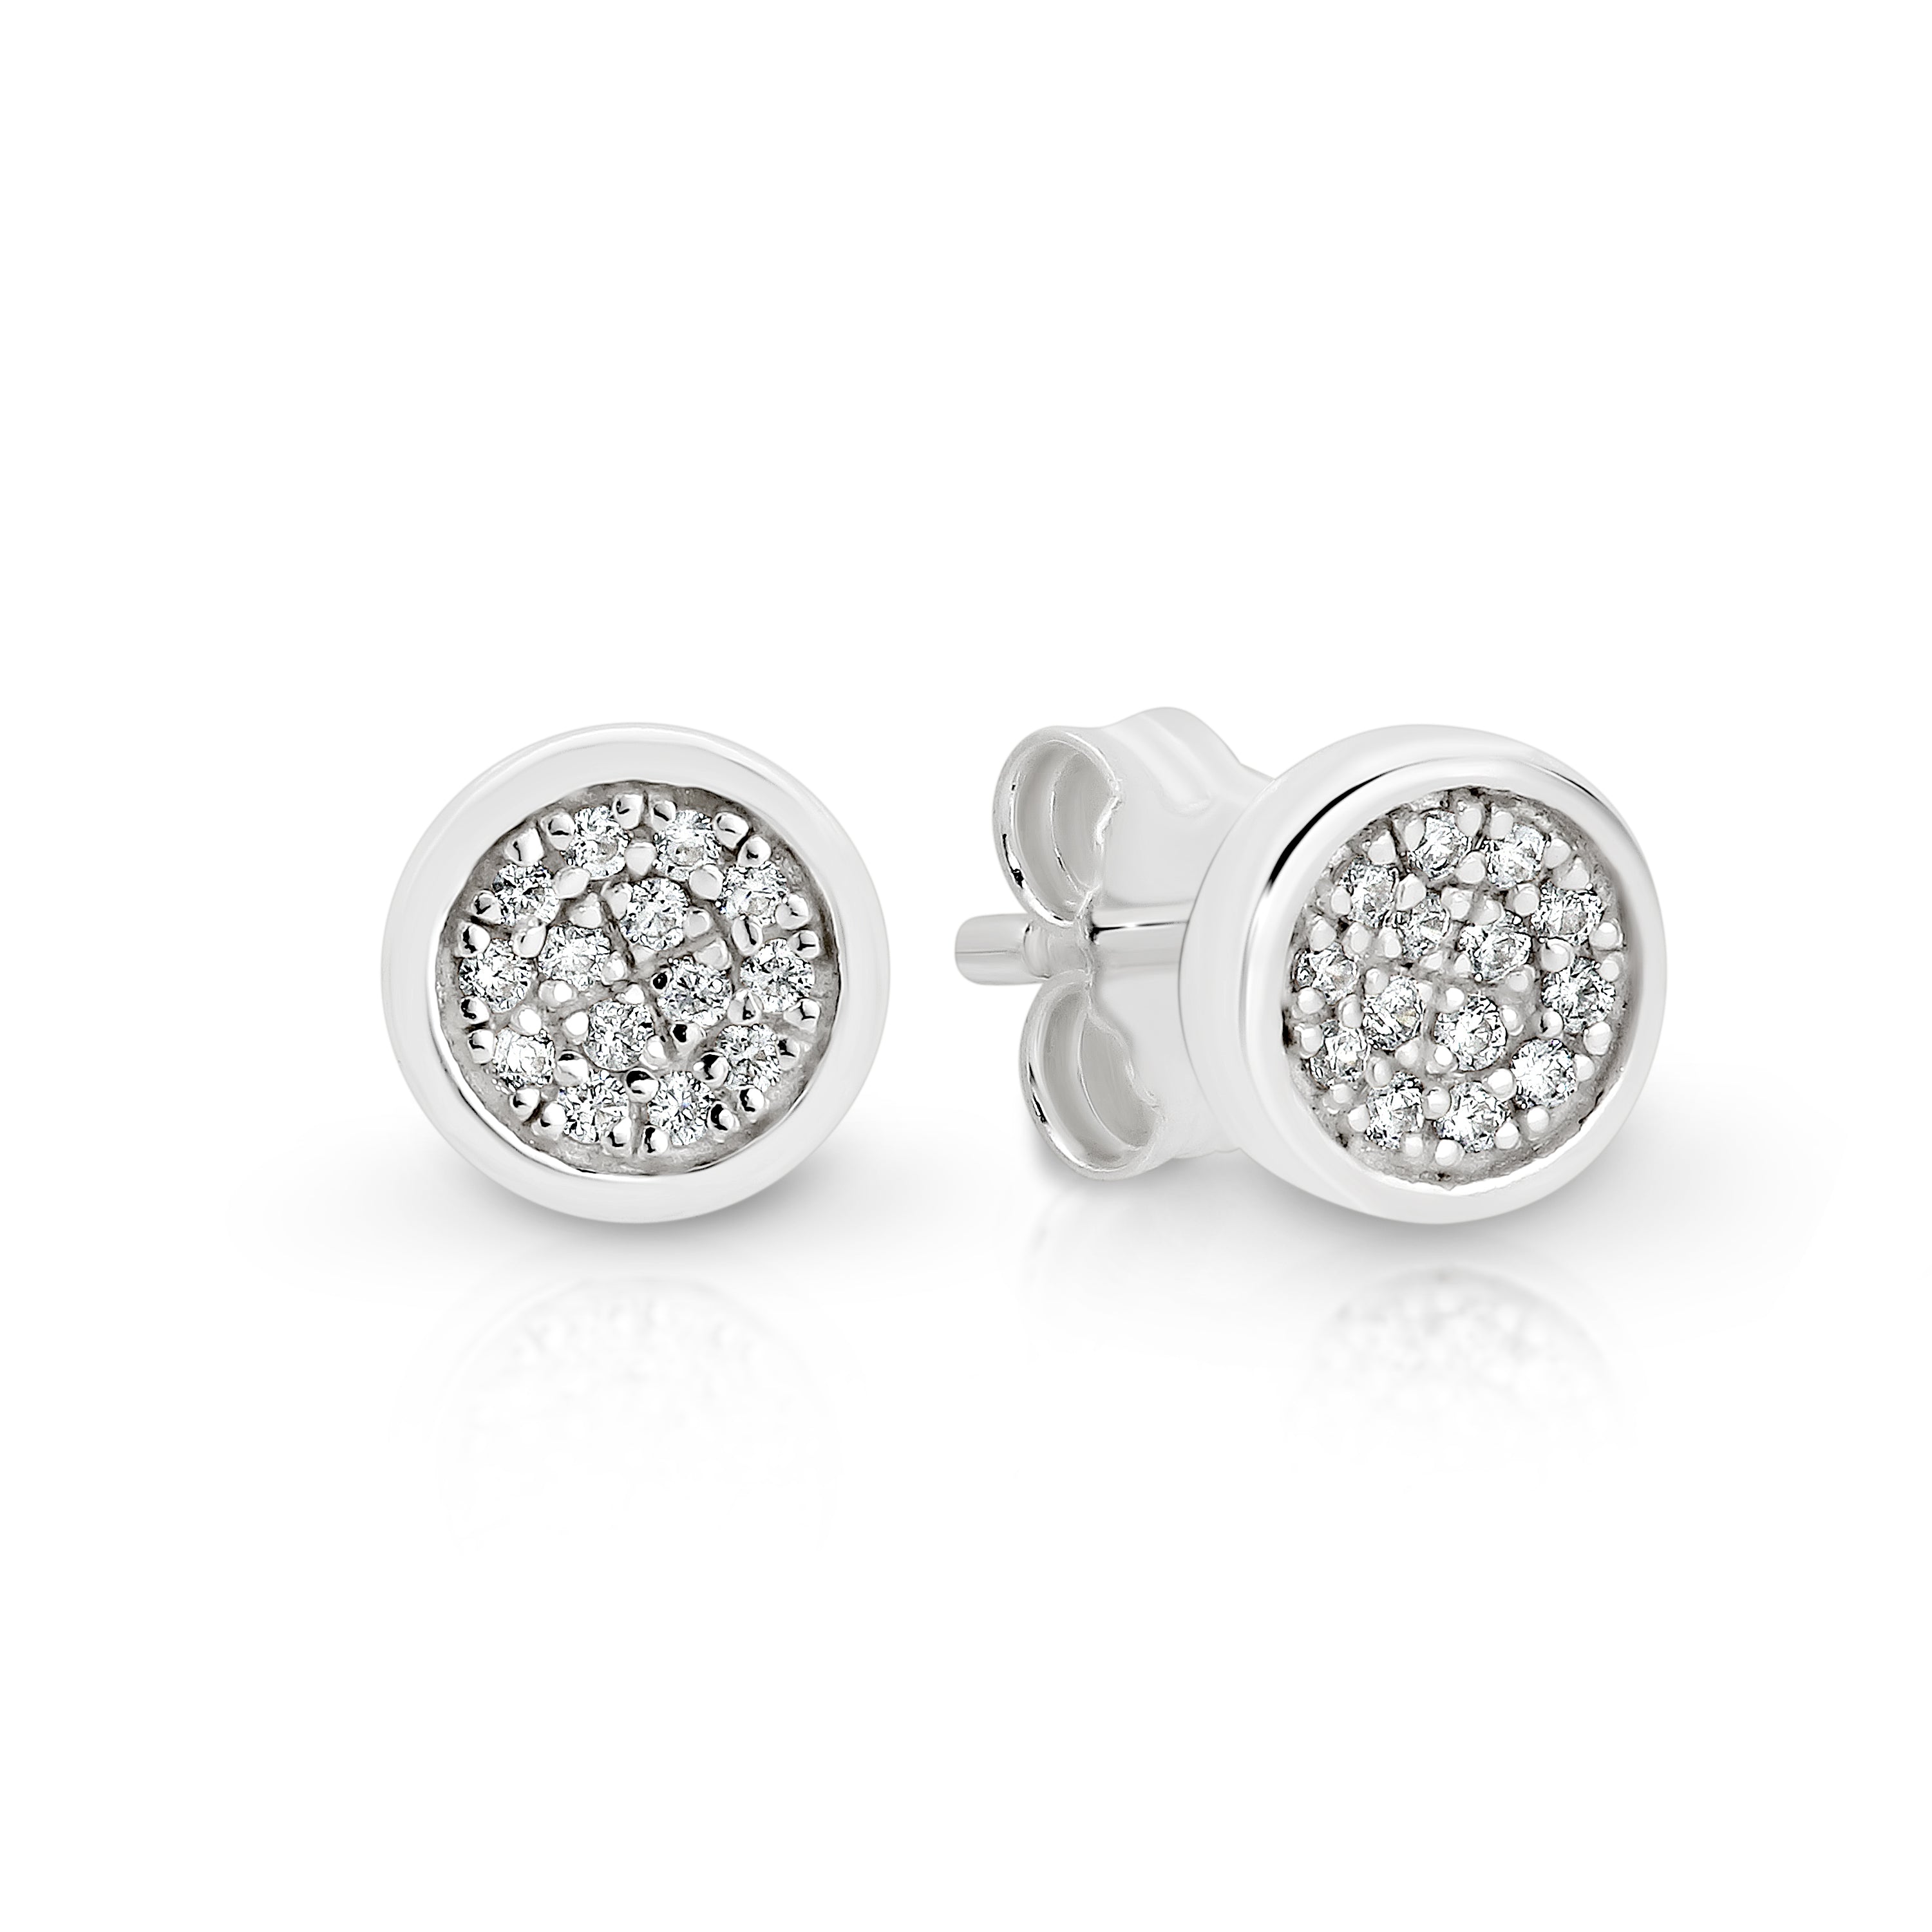 Silver cubic zirconia disc earrings